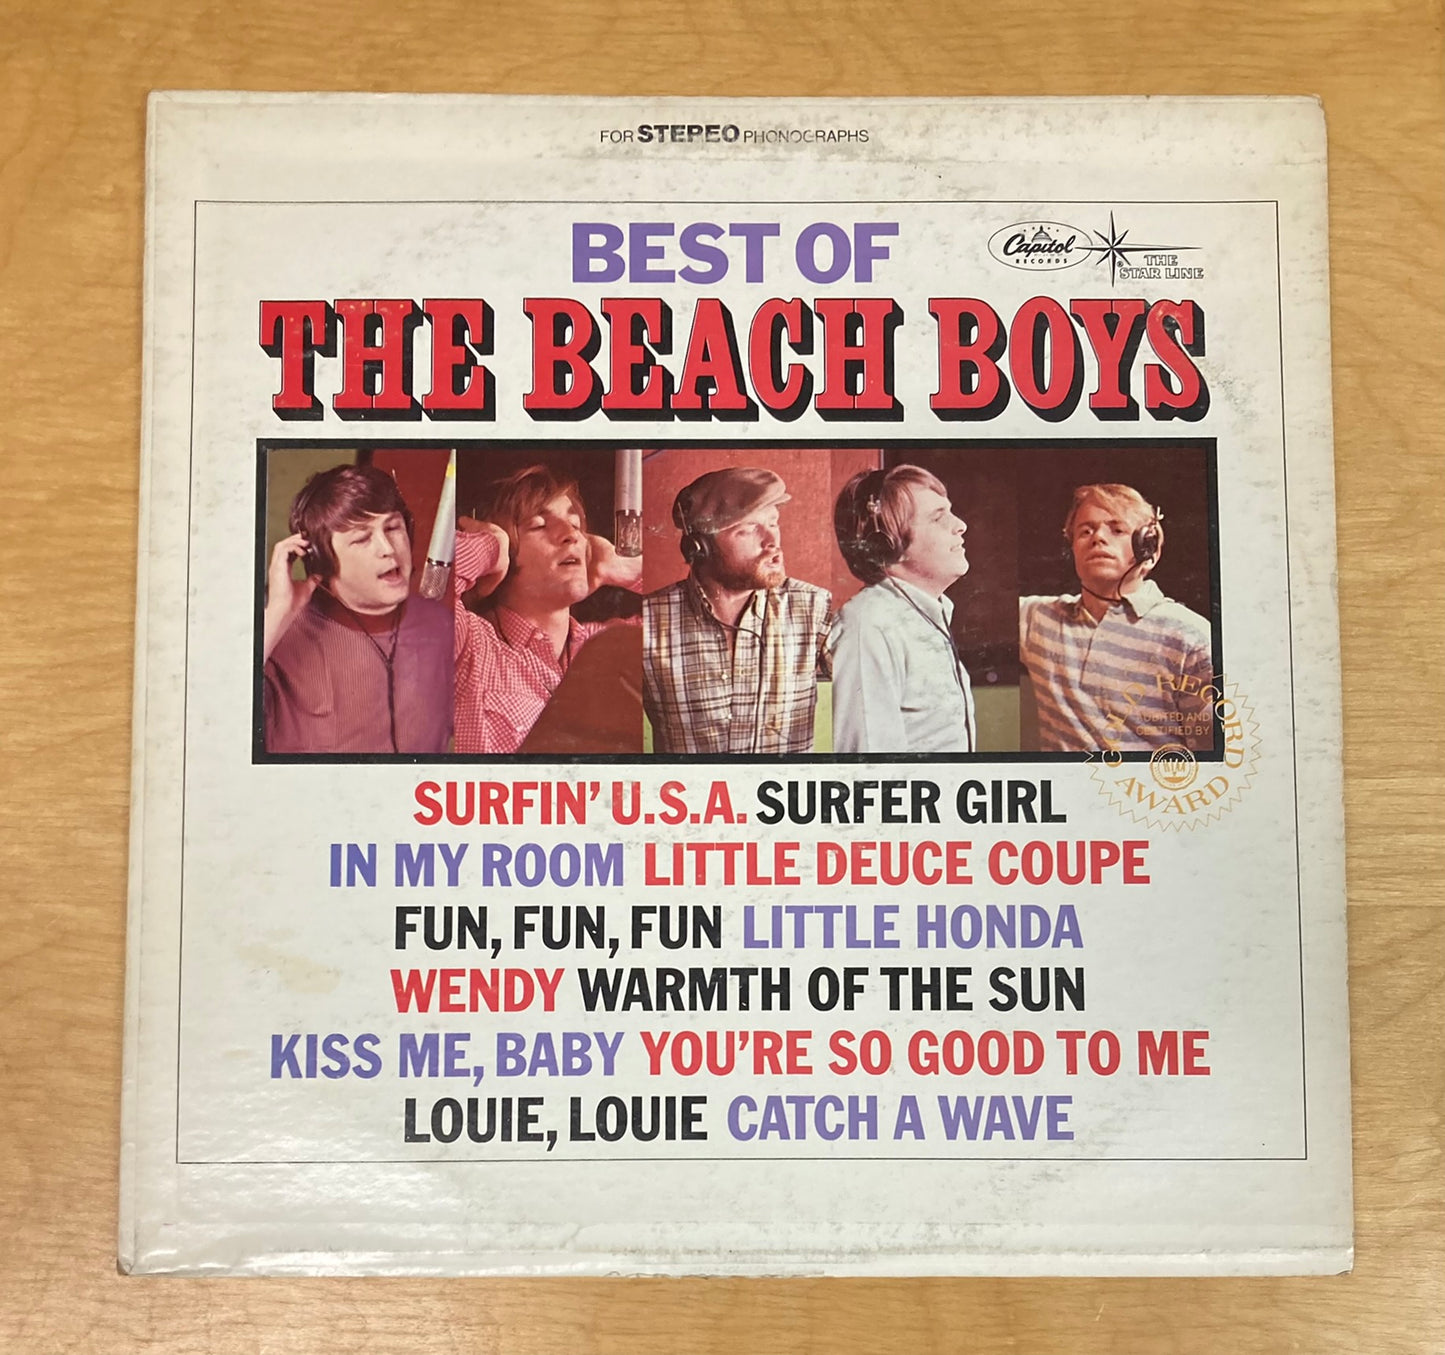 Best Of The Beach Boys Vol. 1 - The Beach Boys